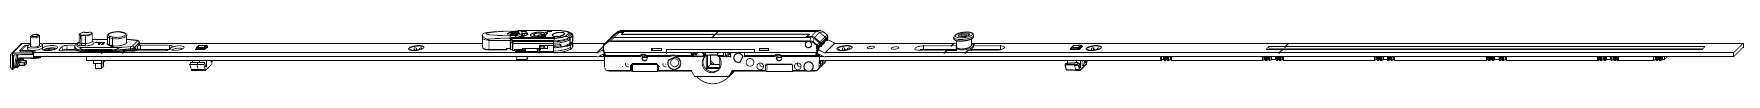 MAICO -  Cremonese MULTI-MATIC anta ribalta antieffrazione altezza maniglia fissa con piedino e dss per ribalta e bilanciere - gr / dim. 2200 - entrata 6,5 - alt. man. 1050 - lbb/hbb 1951 - 2200